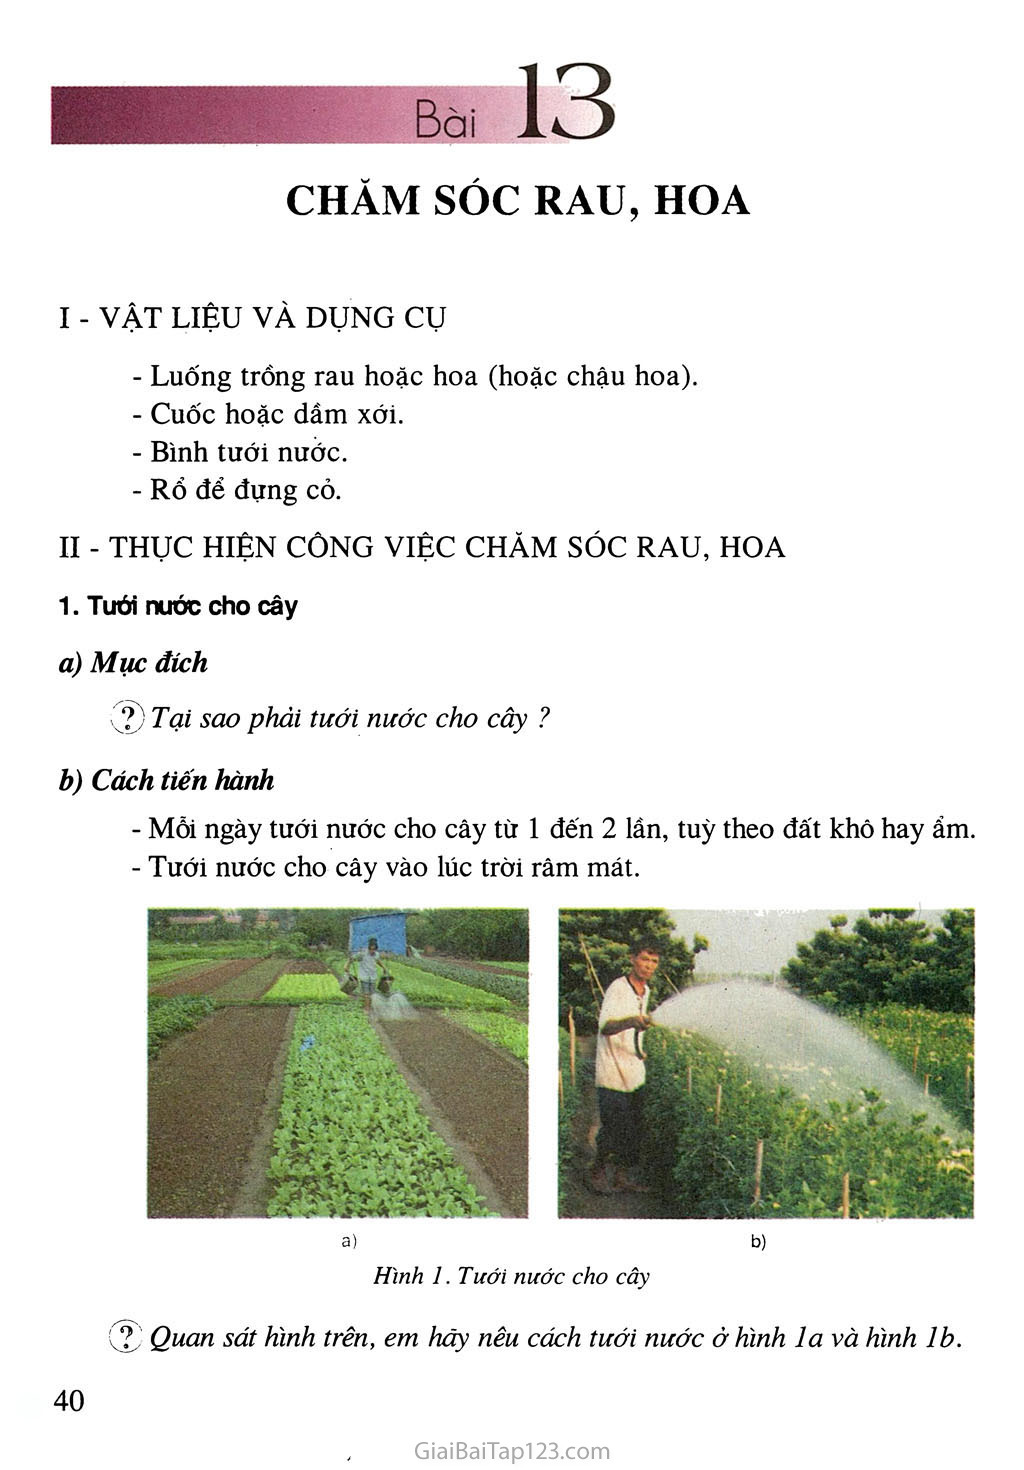 Bài 13. Chăm sóc rau, hoa trang 1